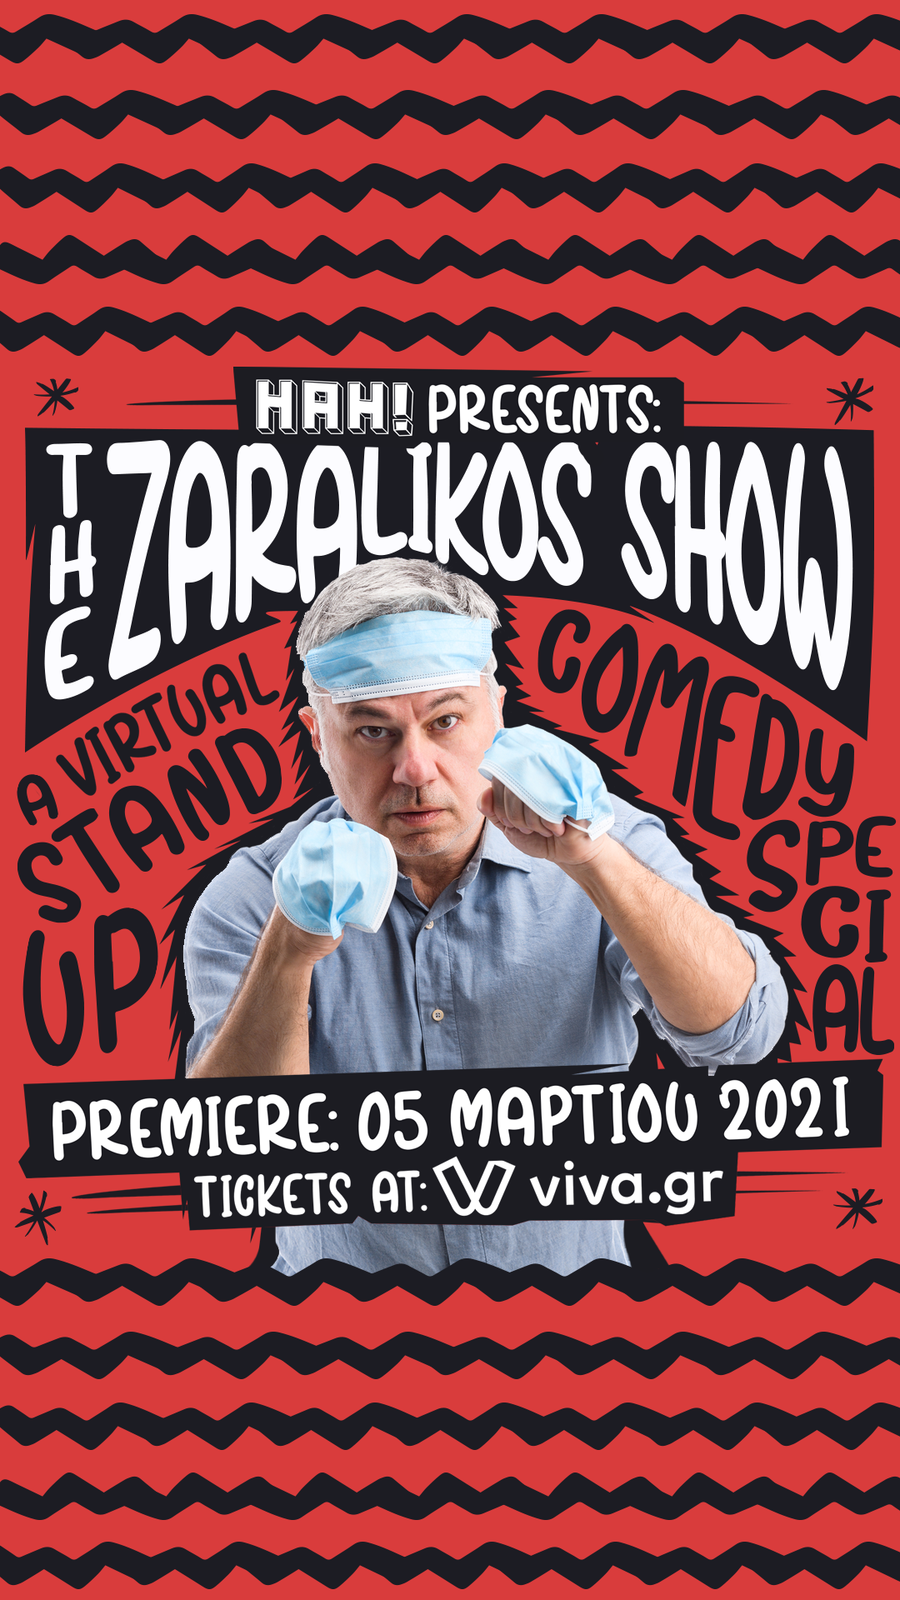 The Zaralikos Show STORY